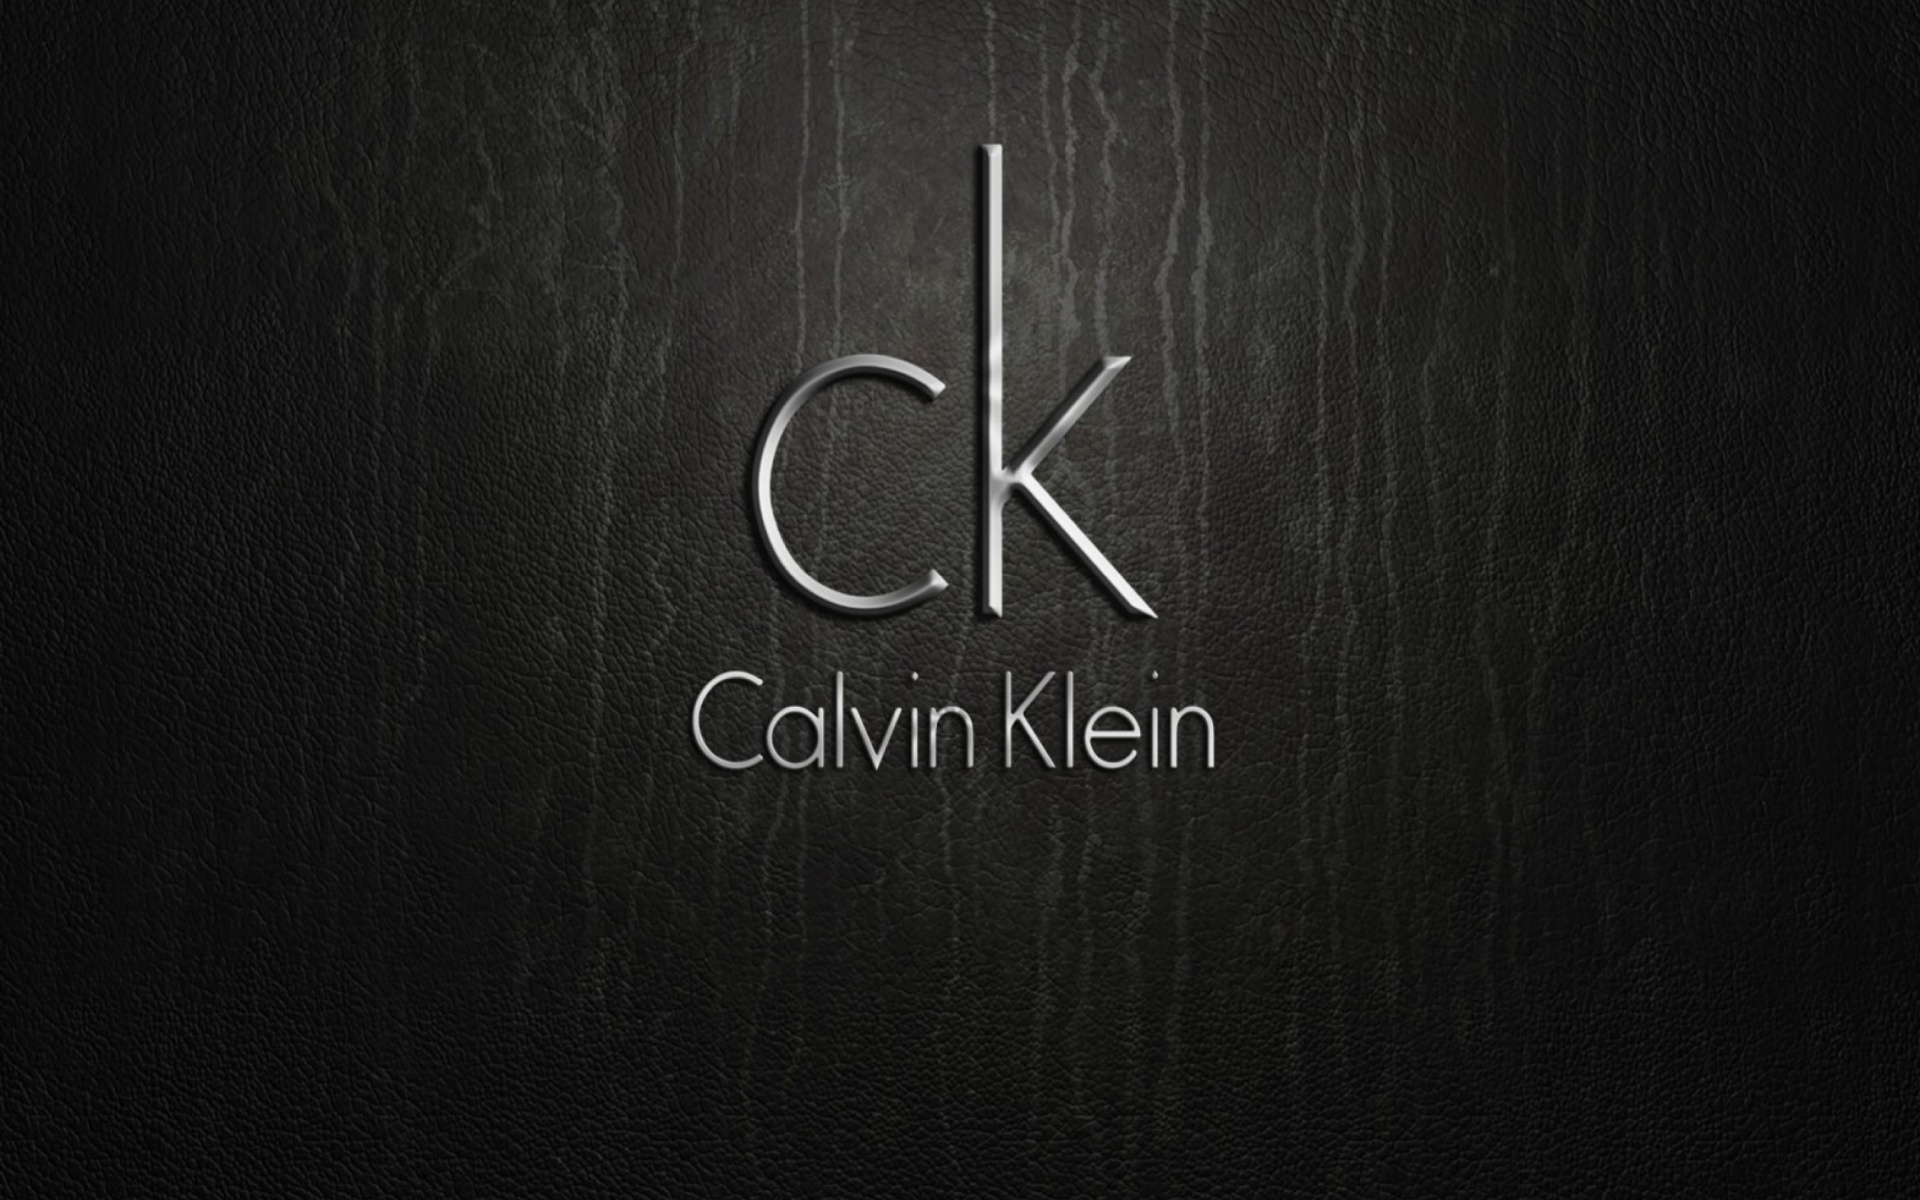 الأبيض يزين مجموعة "Calvin Klein" لربيع 2017